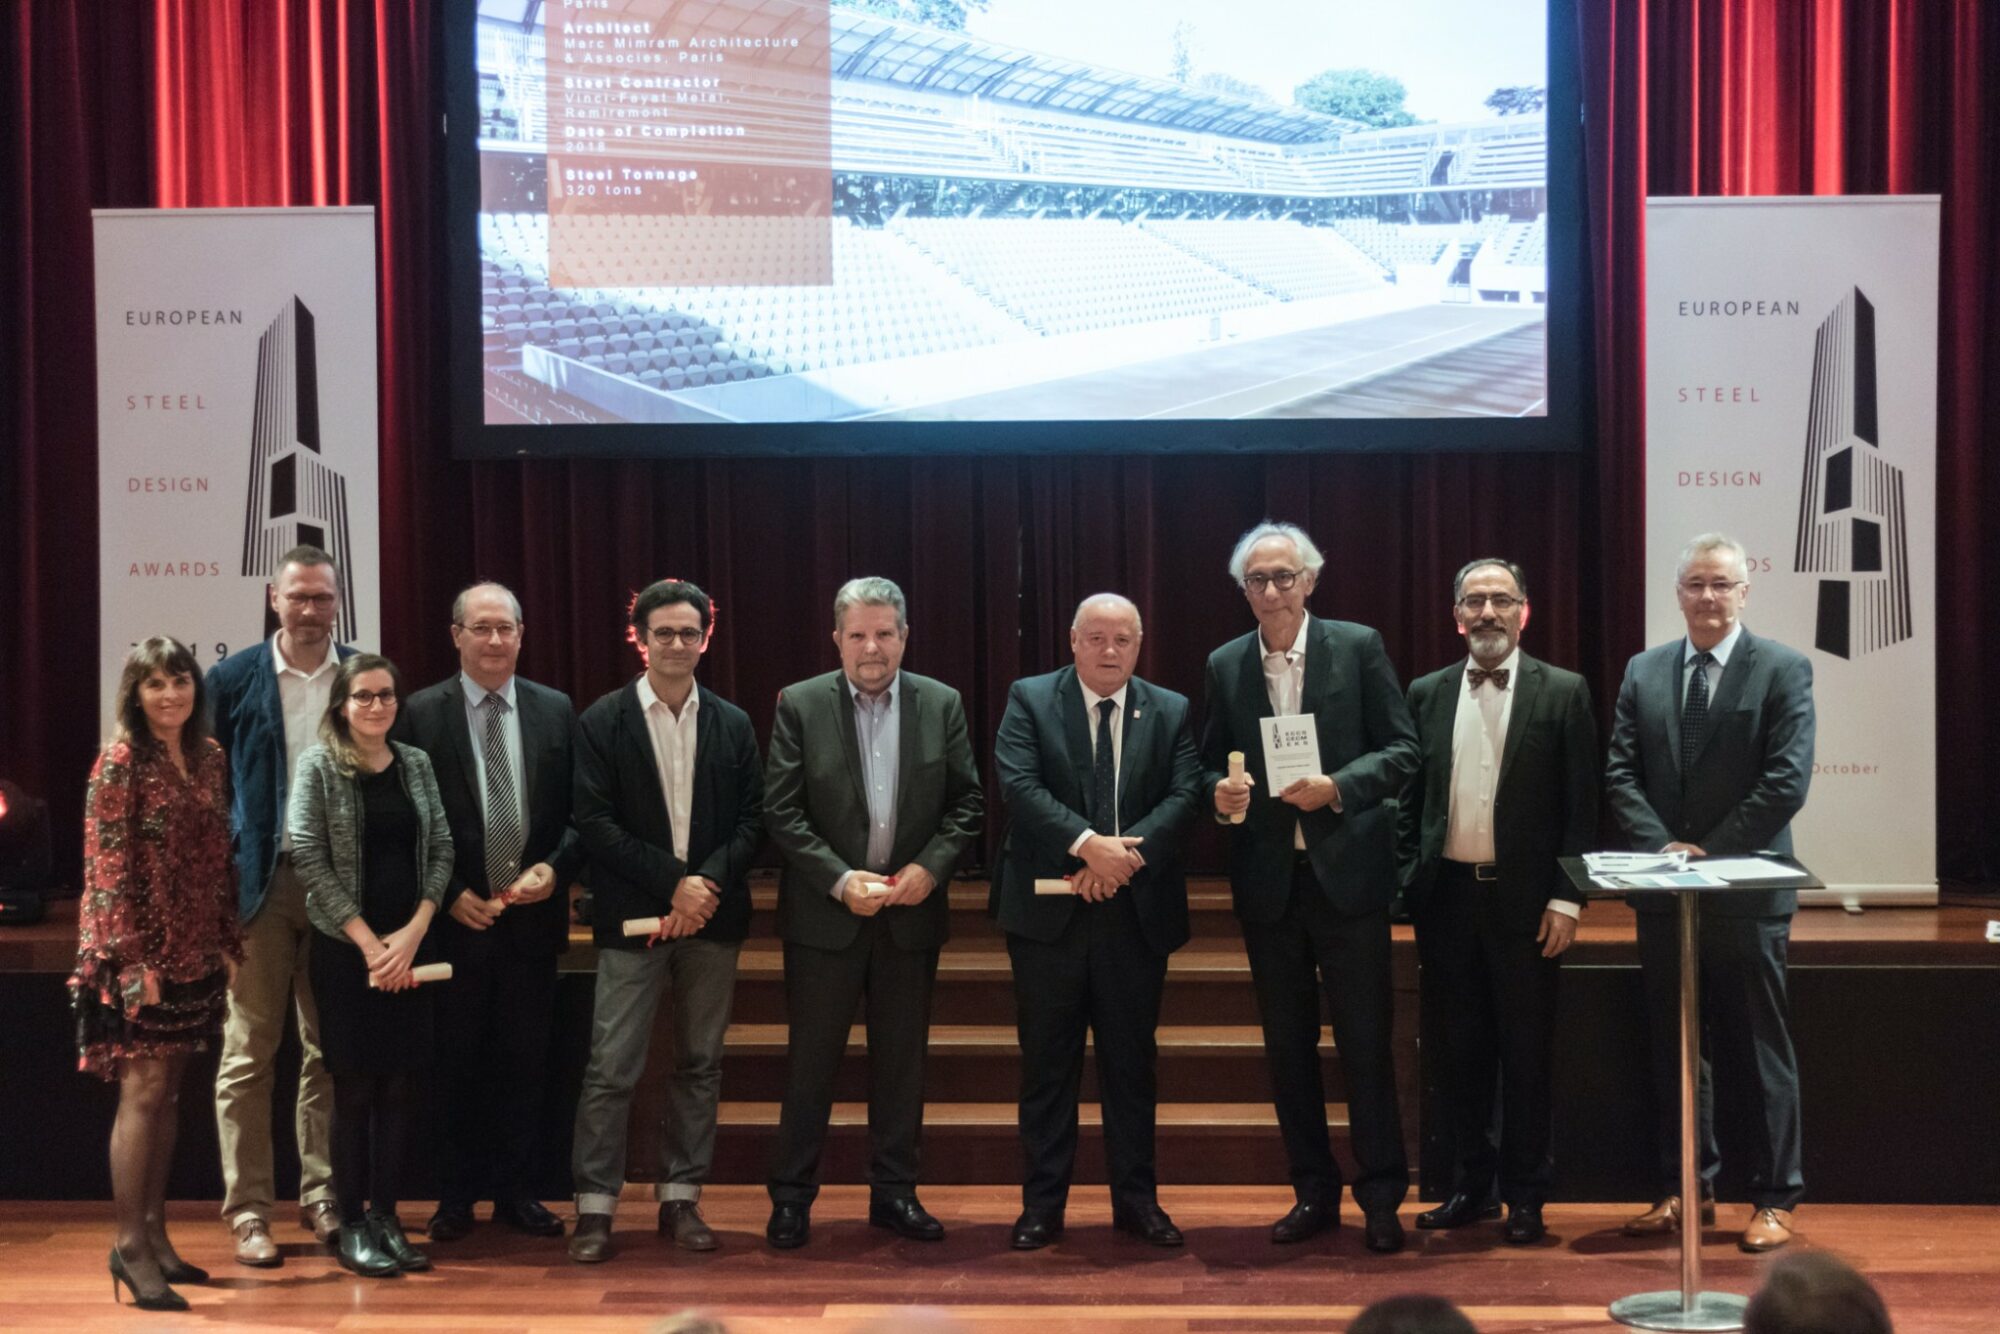 La FFT va recompensar la realització del tribunal Simonne-Mathieu a la cerimònia dels “European Steel Design Awards 2019” a Brussel·les